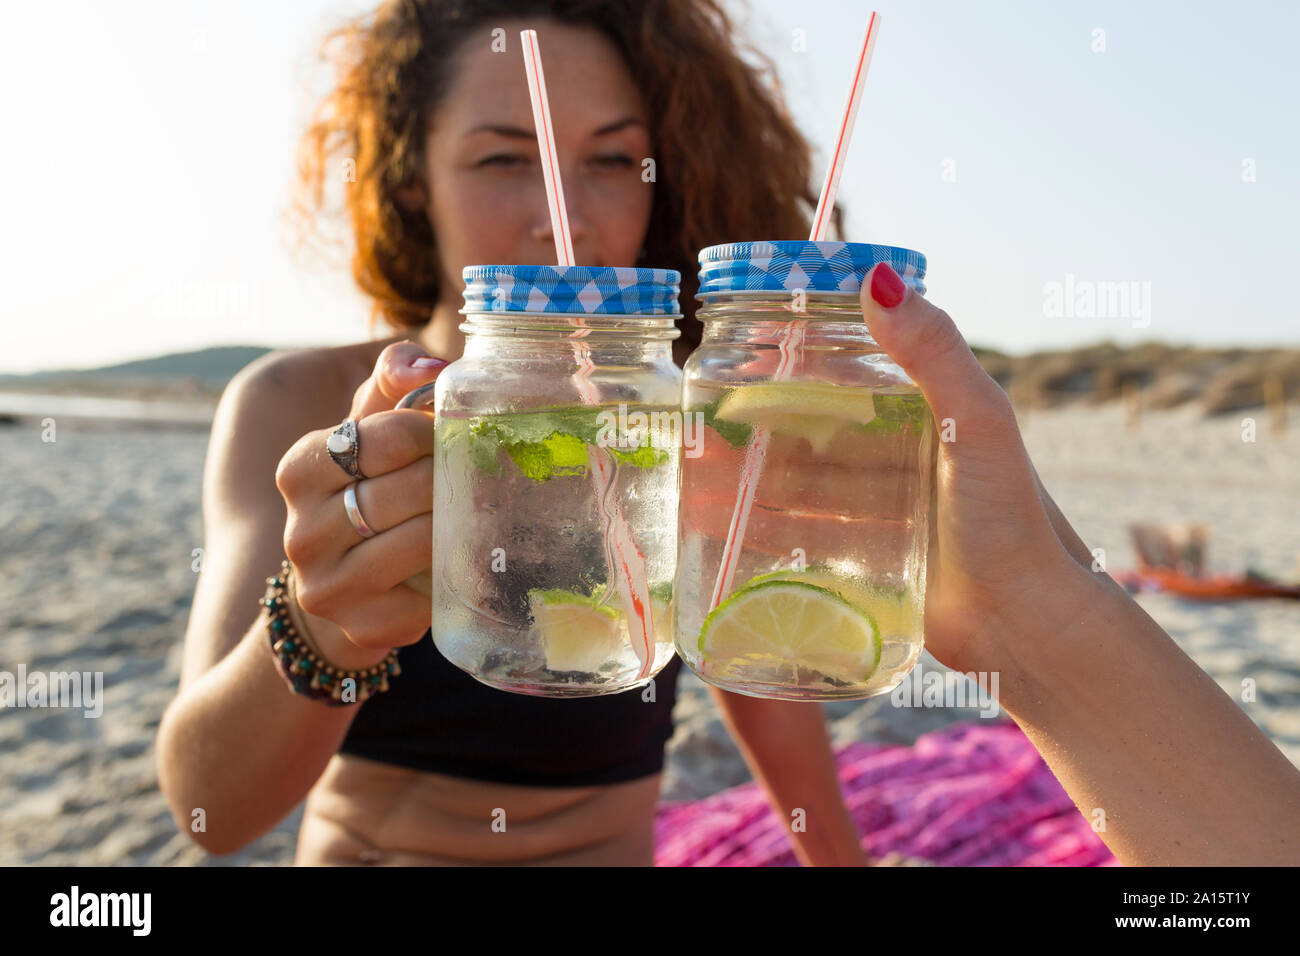 Deux verres avec de l'eau, de chaux et de menthe, friends toasting at the beach Banque D'Images